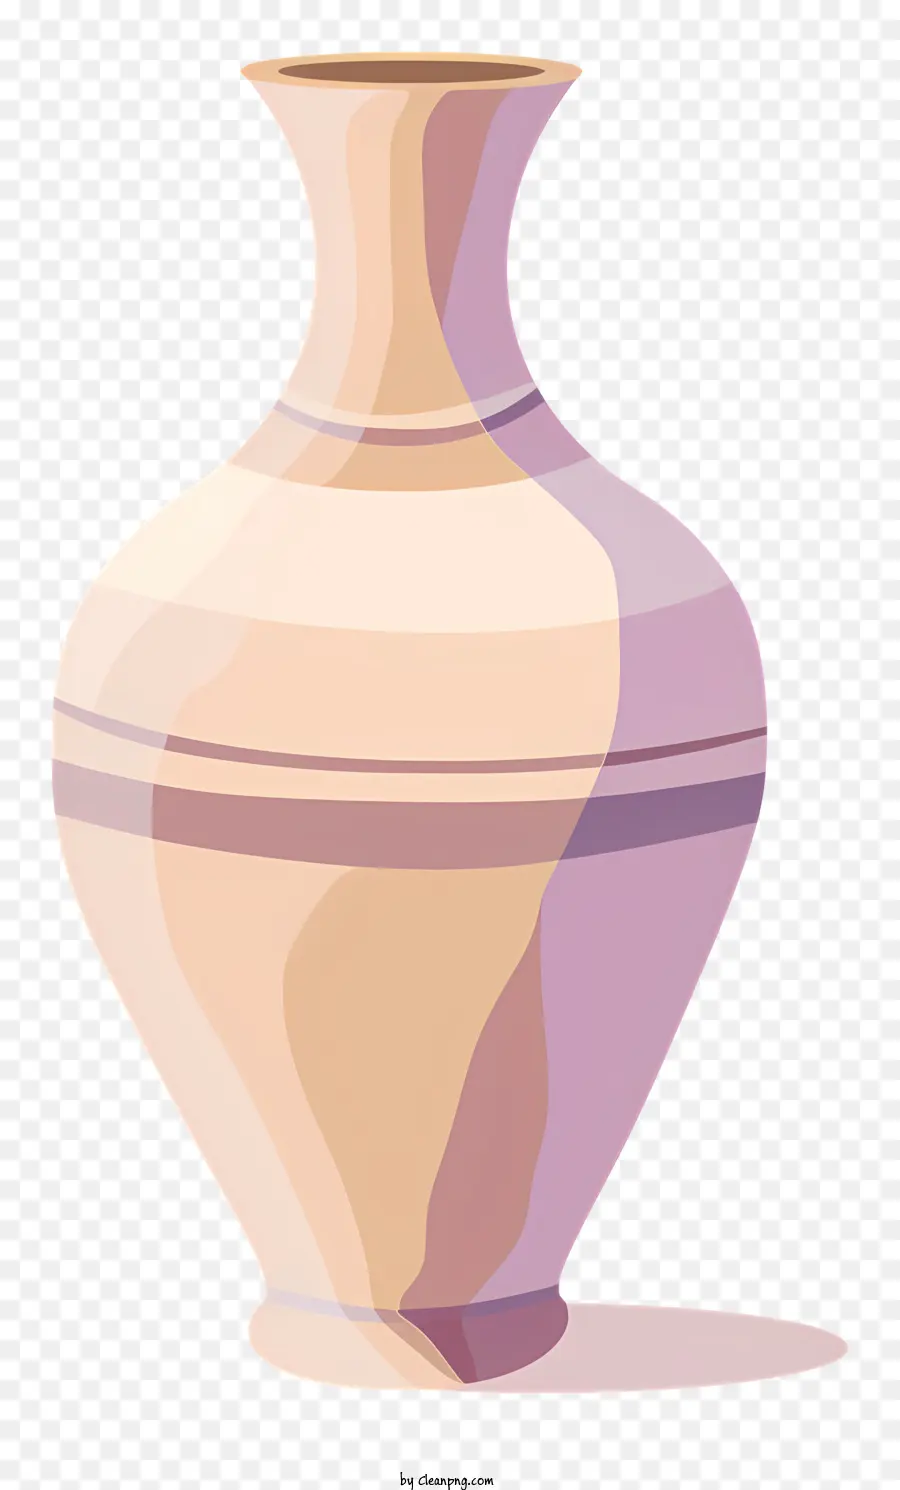 sfondo bianco - Vaso di argilla semplice e liscio senza caratteristiche